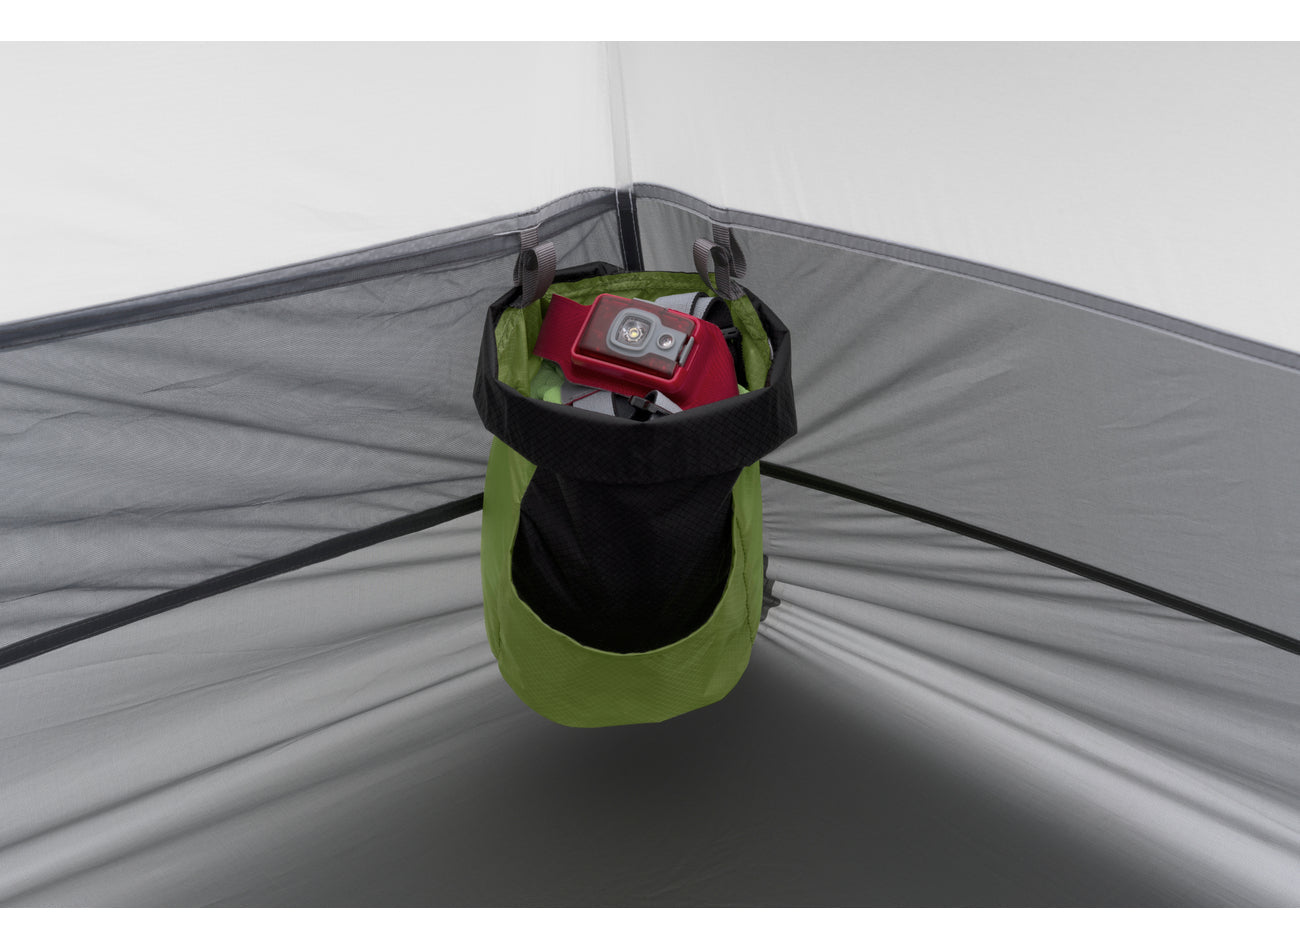 Alto TR2 Plus - Tenda ultraleggera per due persone (3+ stagioni)